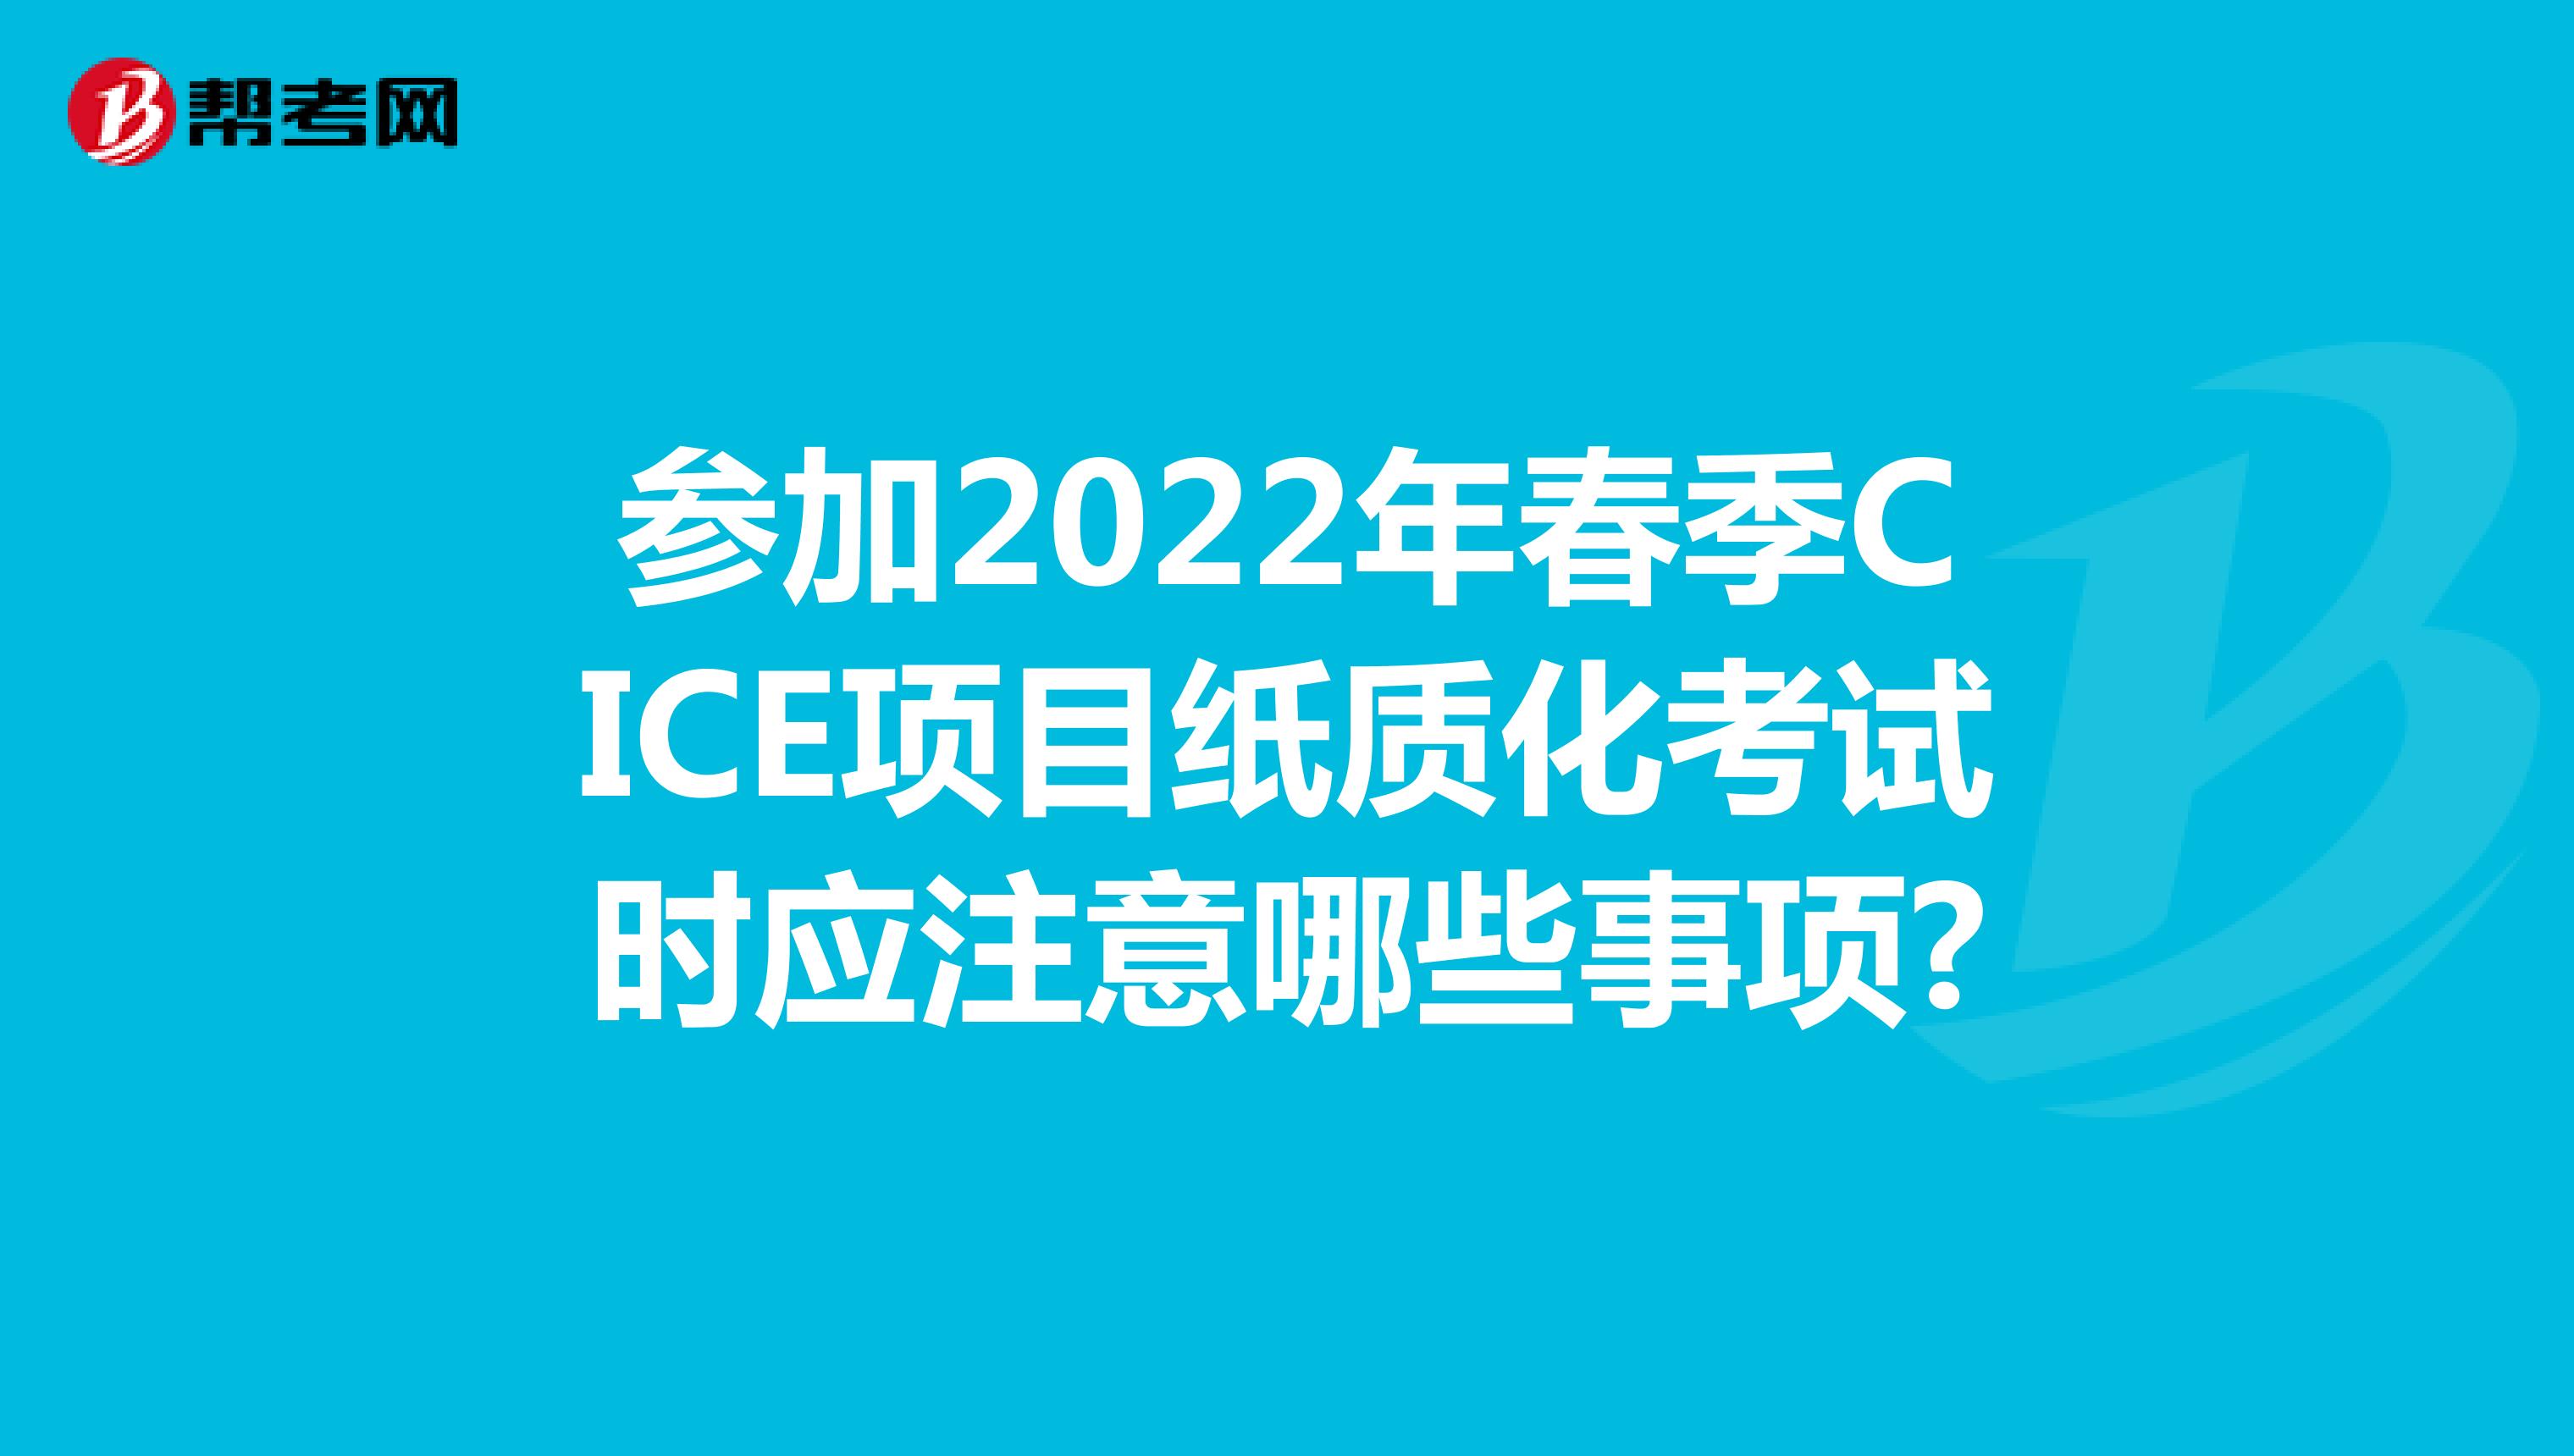 参加2022年春季CICE项目纸质化考试时应注意哪些事项?